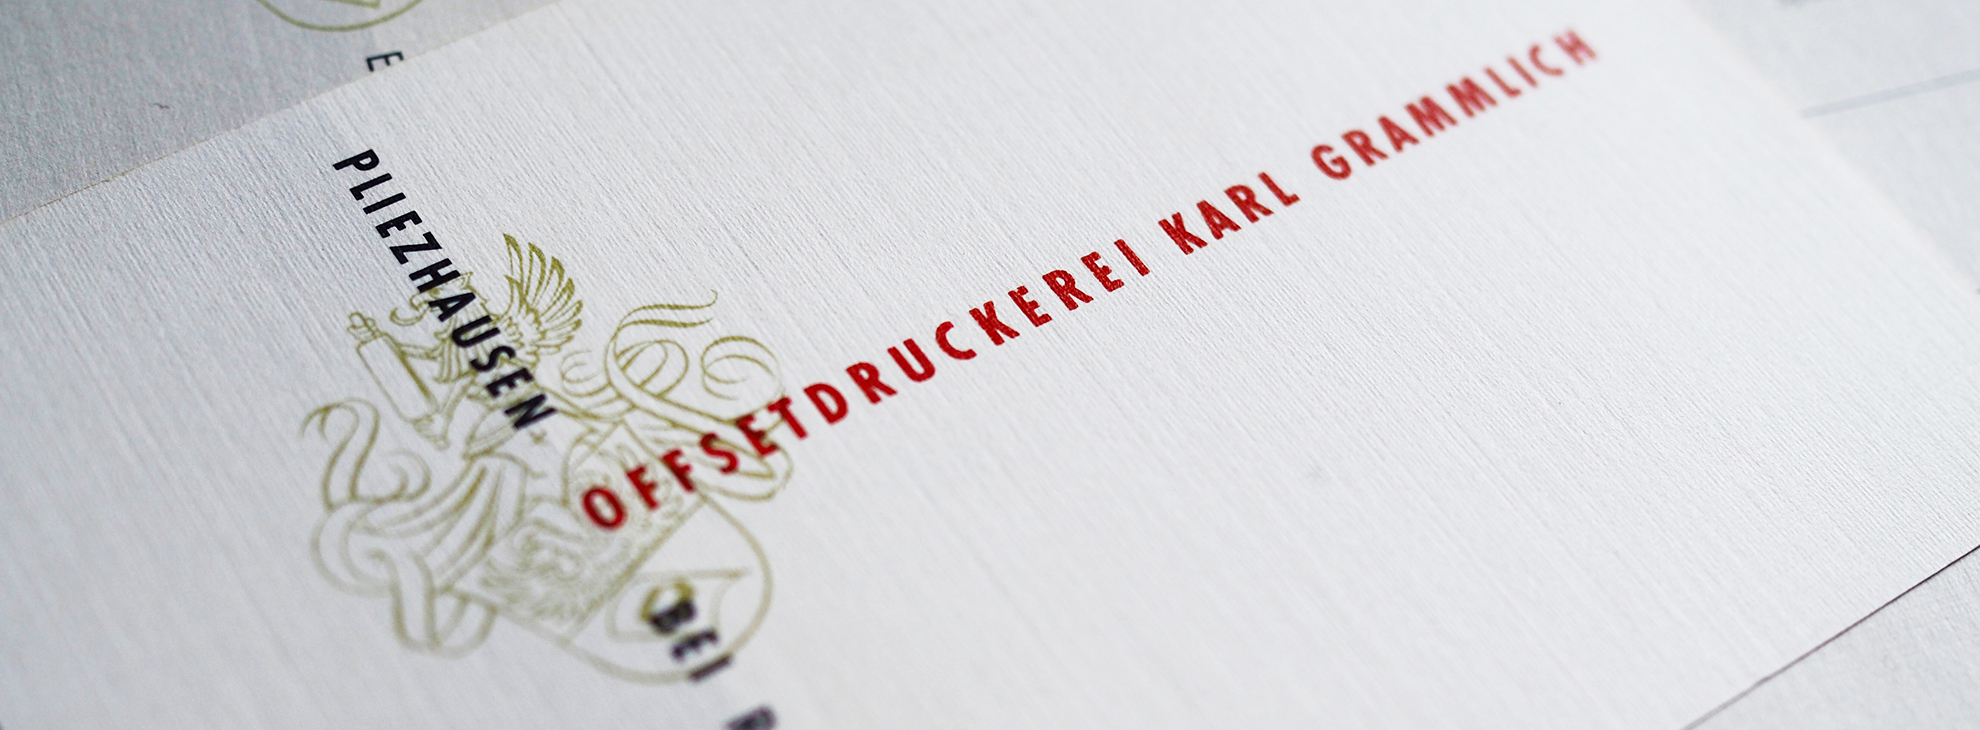 Briefbogen mit früherem Logo der Offsetdruckerei Grammlich